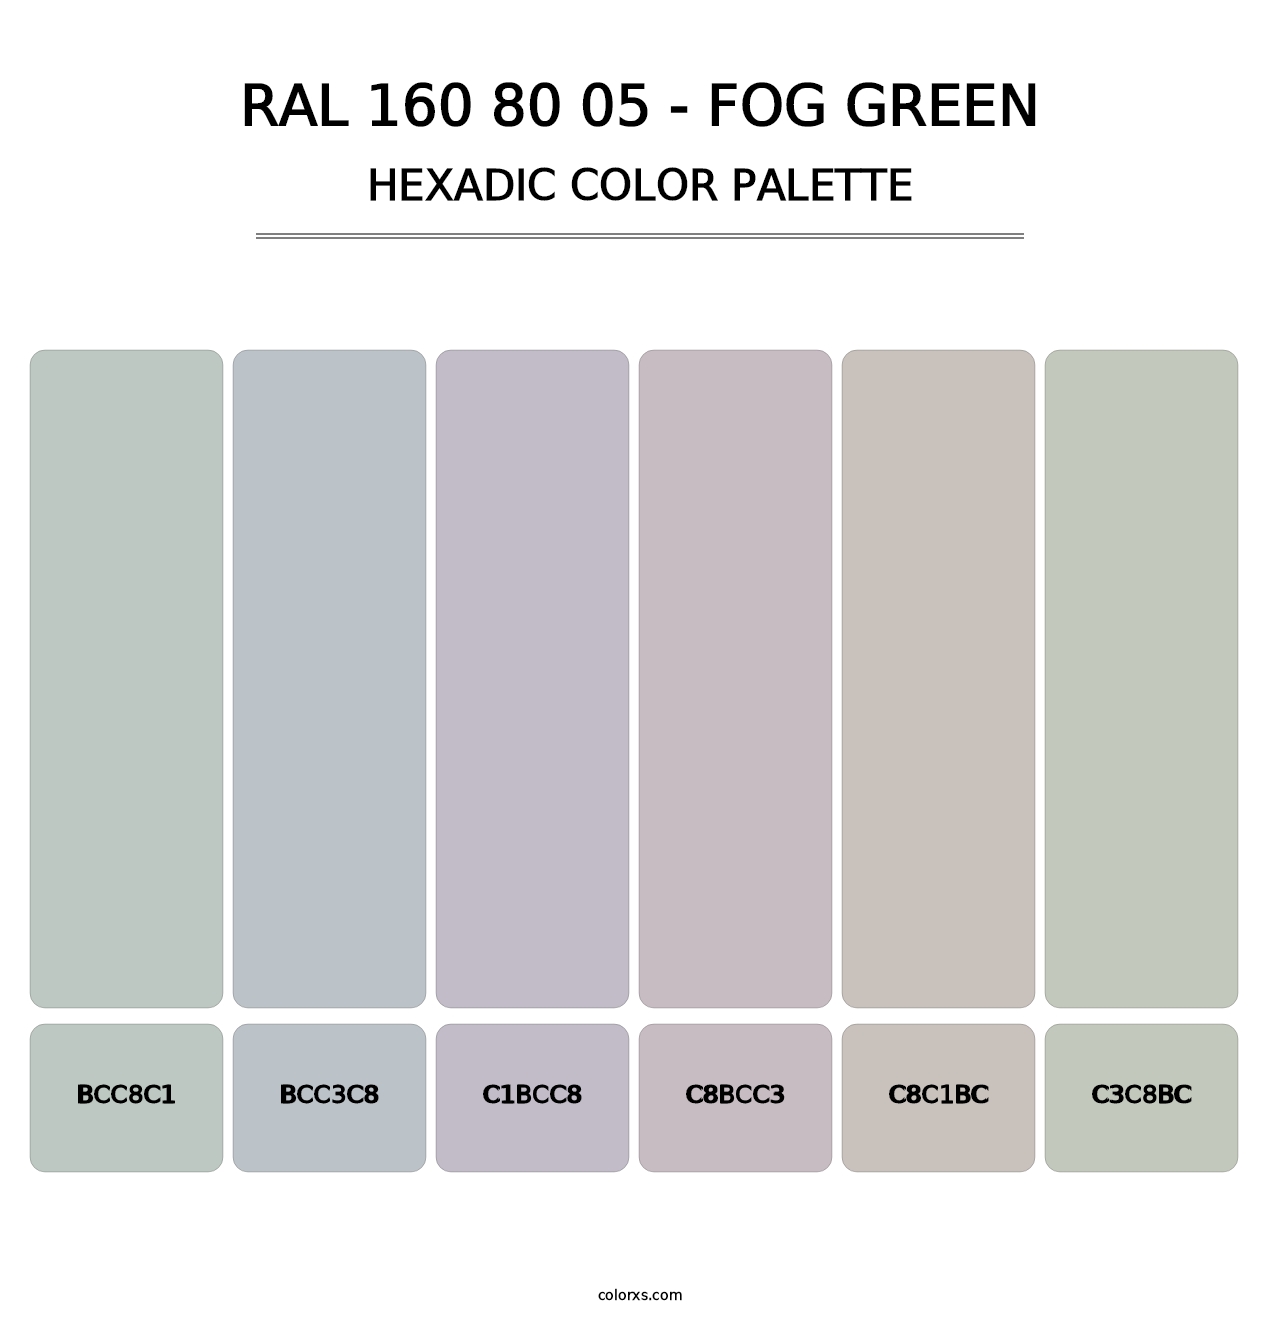 RAL 160 80 05 - Fog Green - Hexadic Color Palette